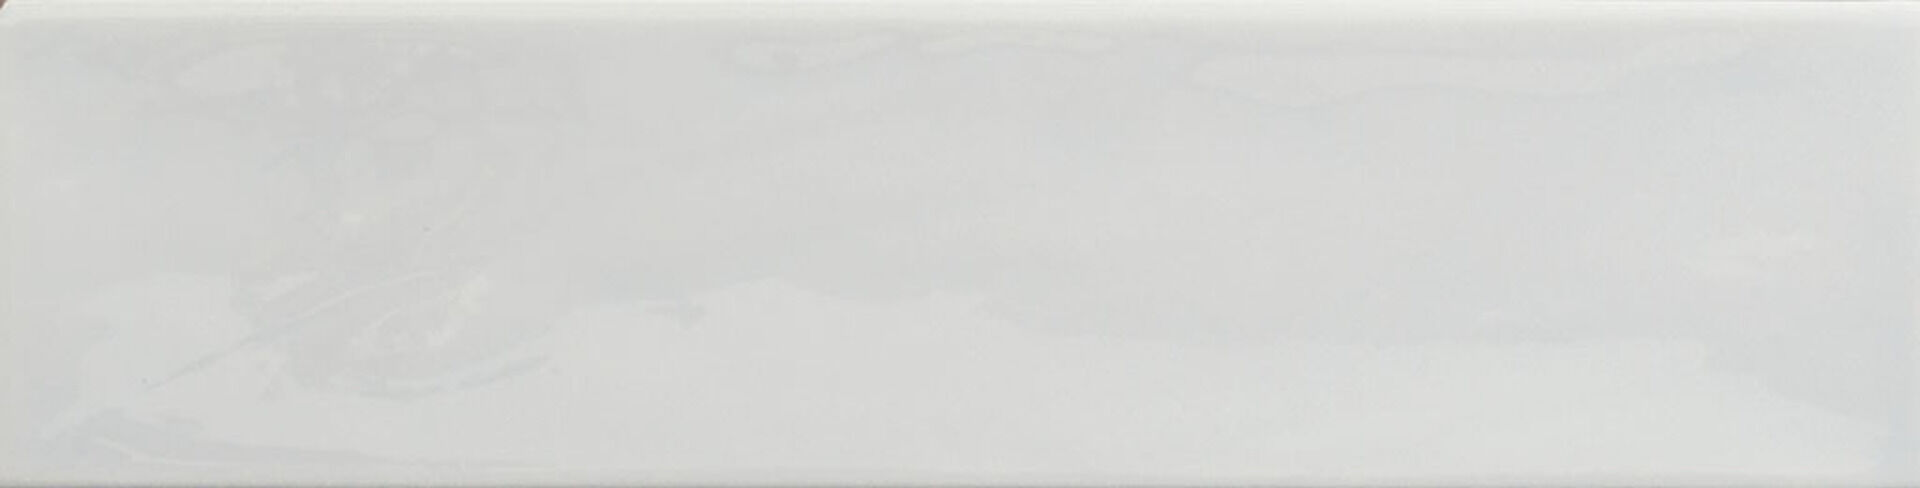 Керамическая плитка KANE WHITE 7,5*30 / коллекция KANE / производитель CIFRE CERAMICA / страна Испания